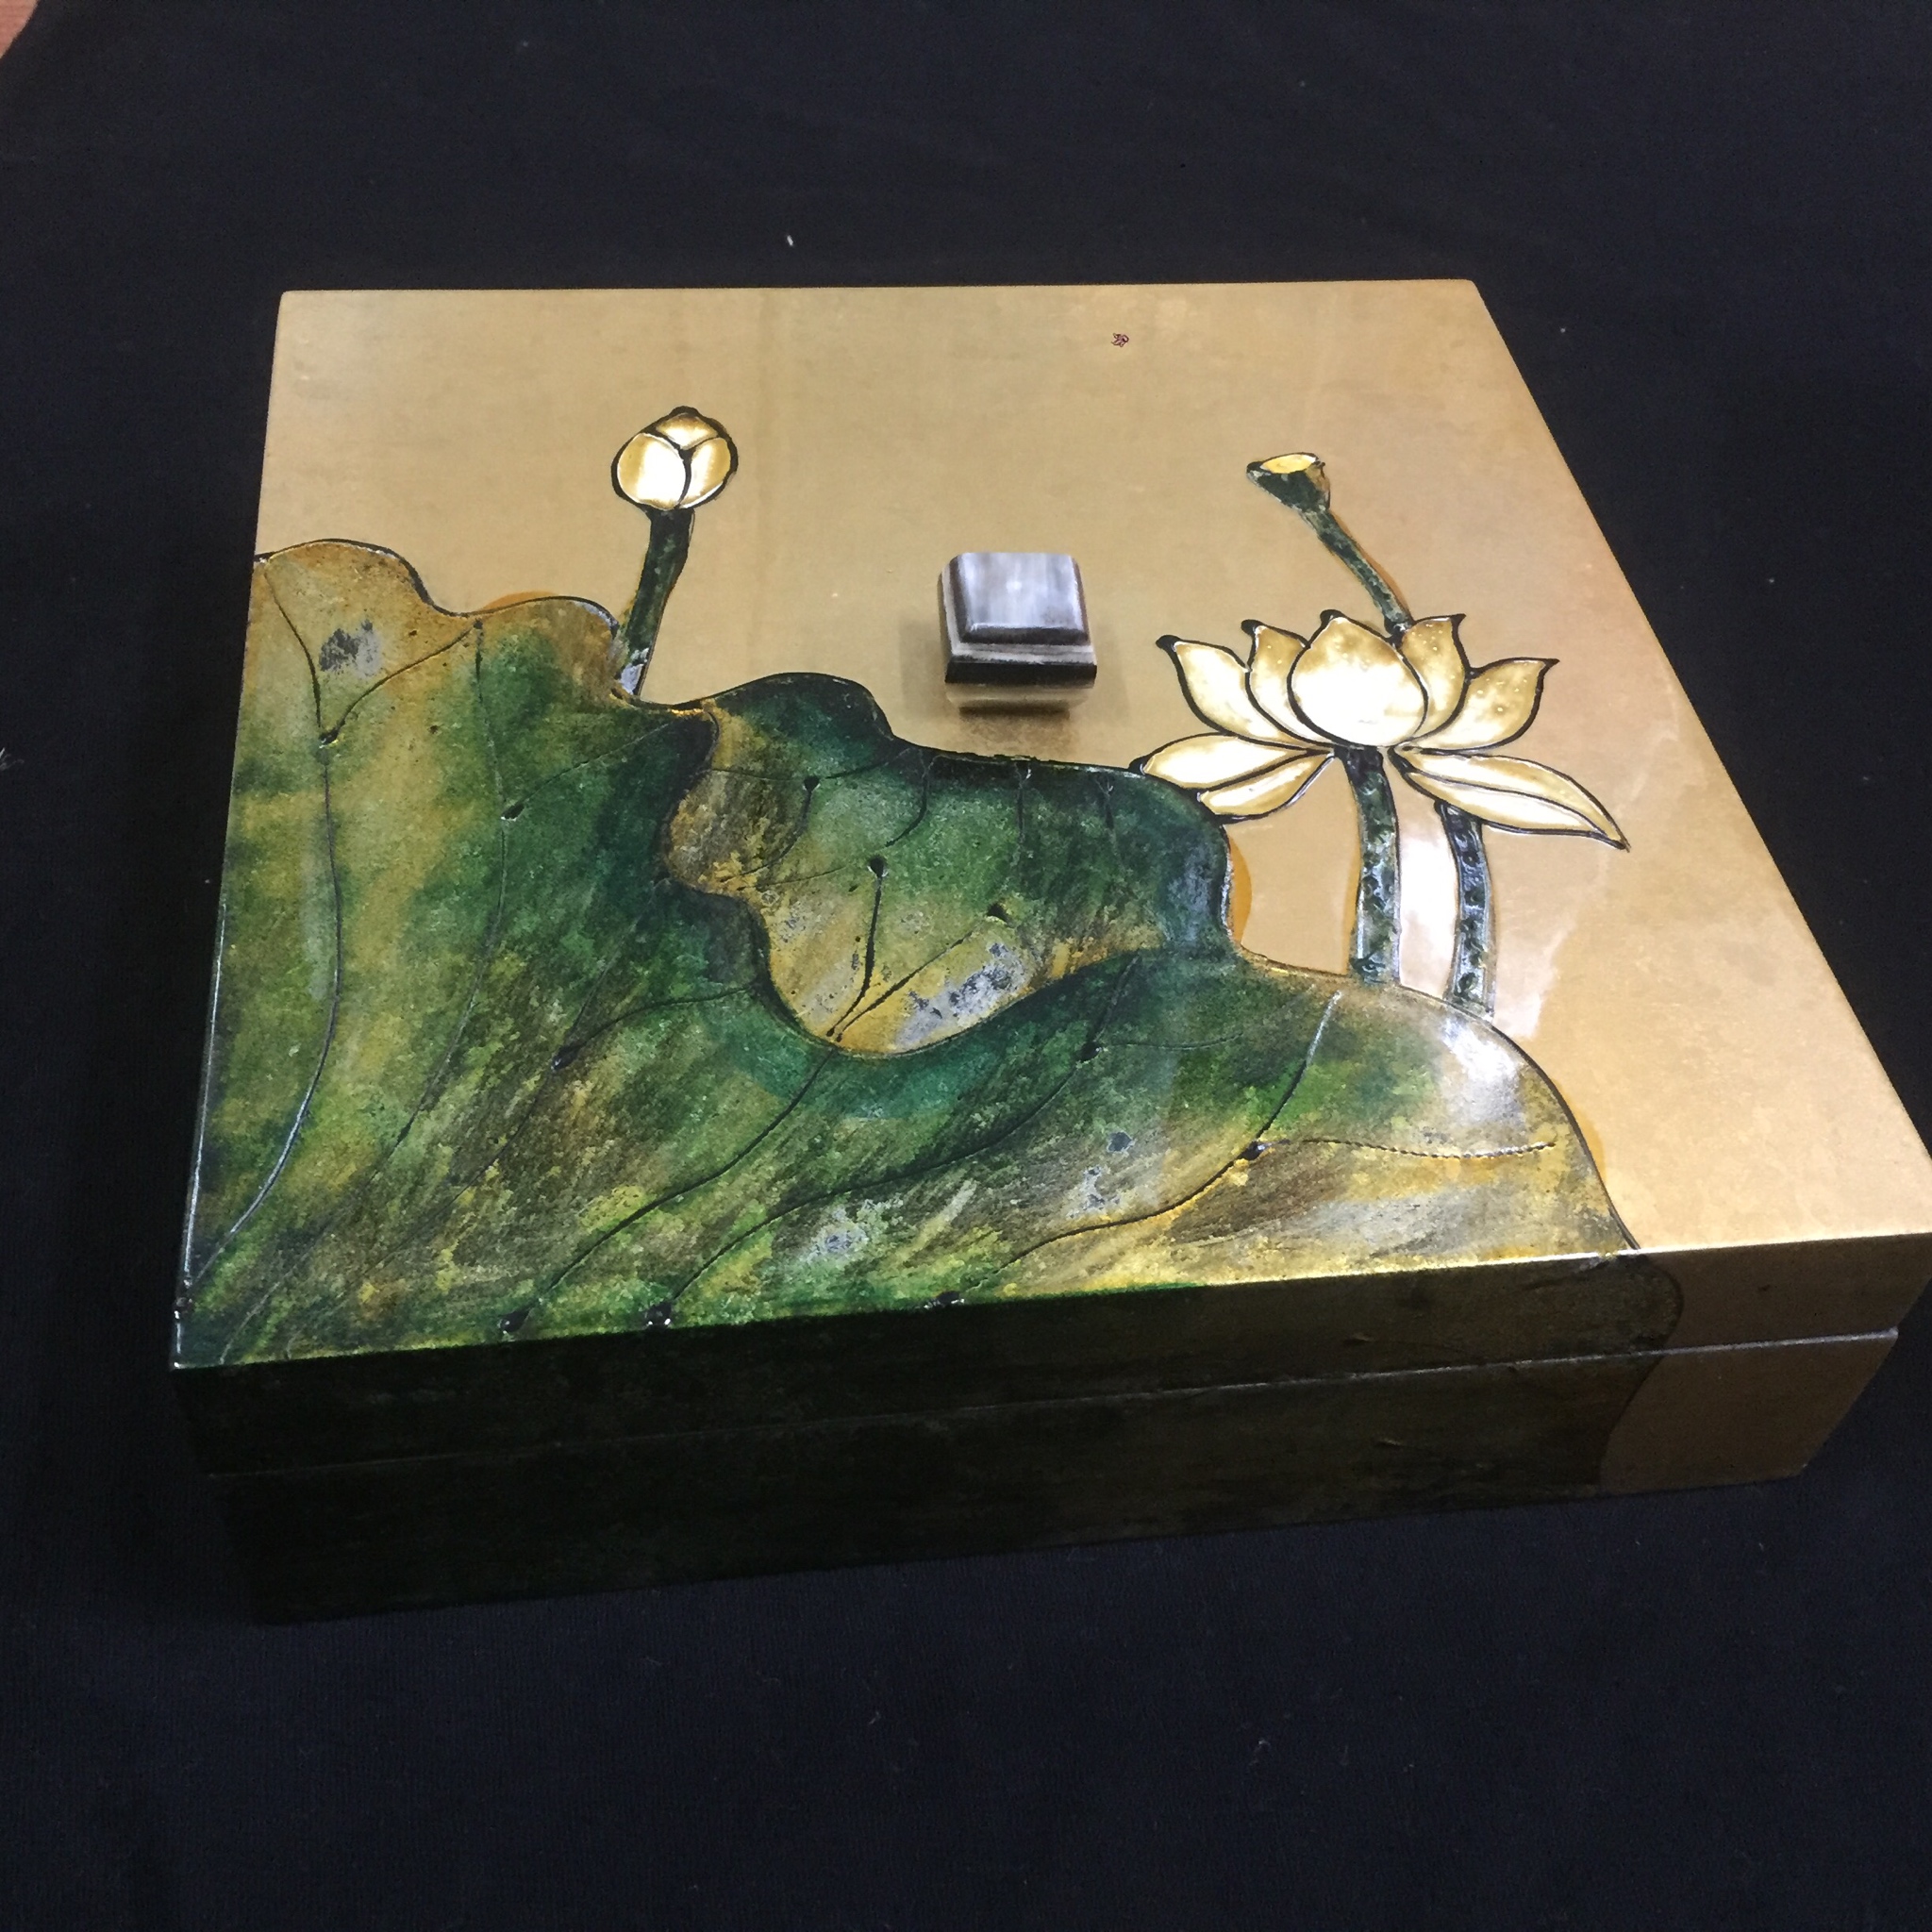 Hộp Mứt Sơn Mài Mỹ Nghệ Vuông 30cm x 30cm -Vẽ hoa sen (hình thật -Sản phẩm làm kỹ )